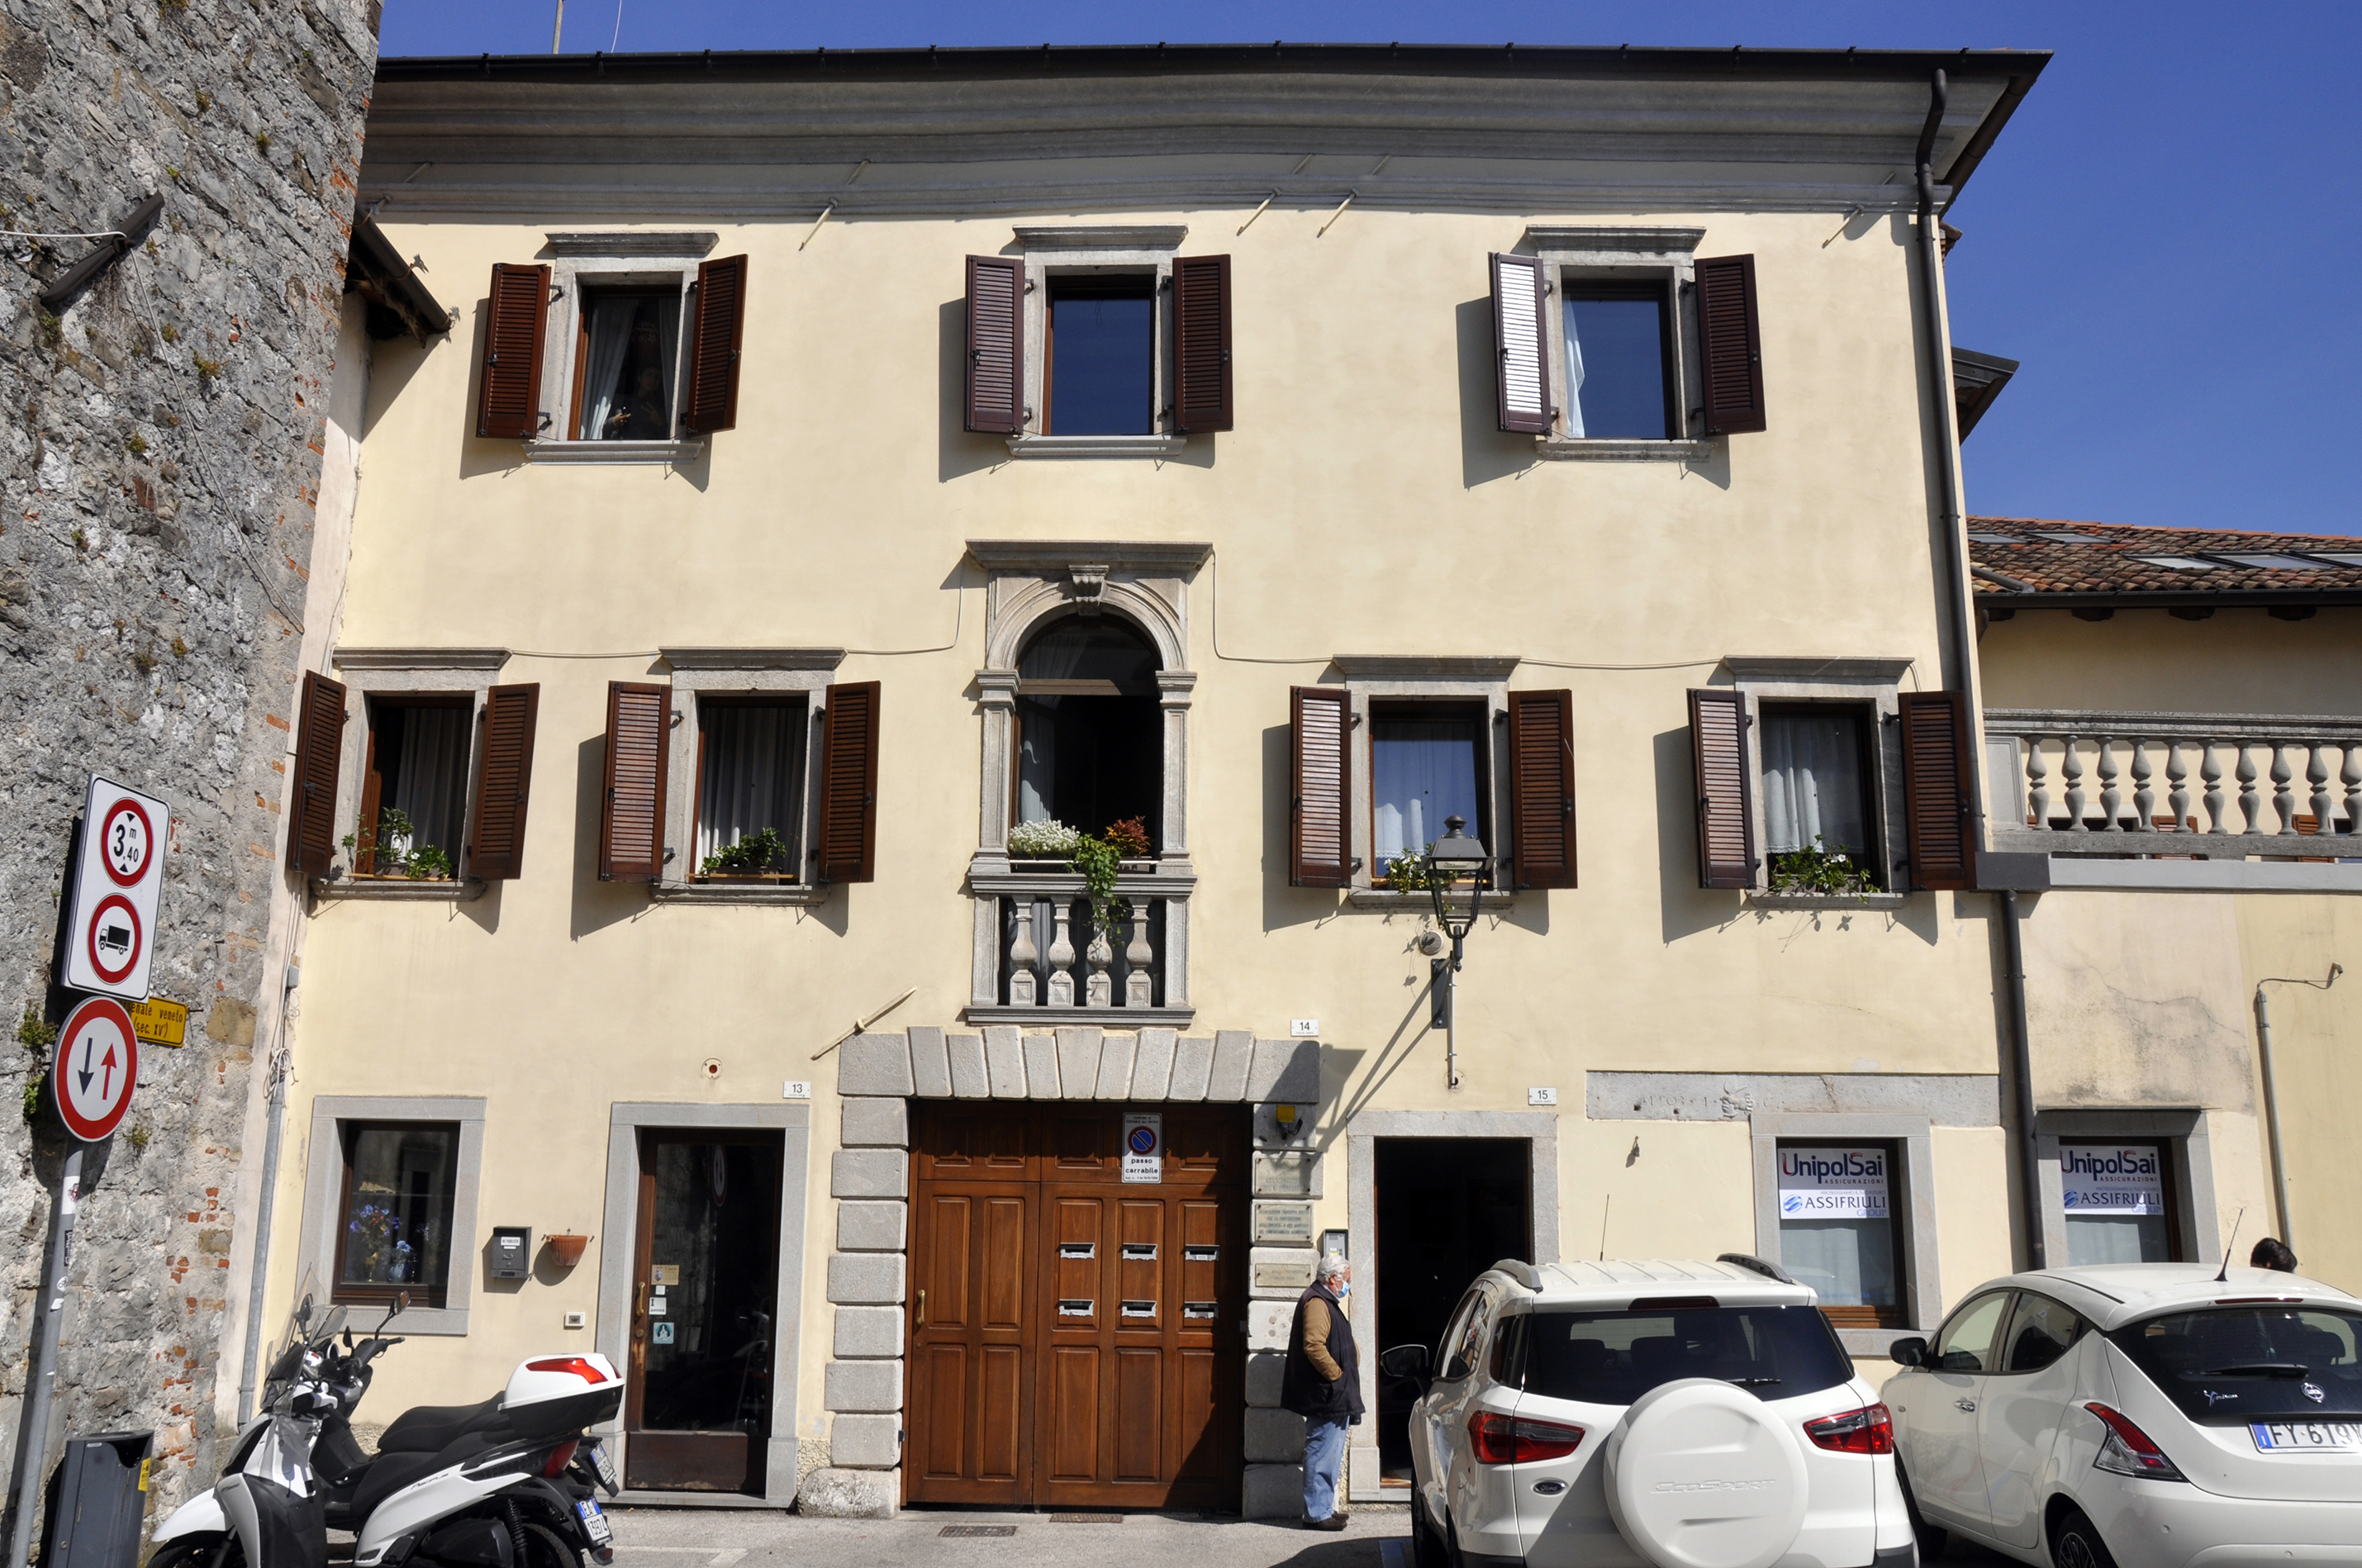 palazzo in Piazza Dante 13, 14, 15 (palazzo, privato) - Cividale del Friuli (UD) 